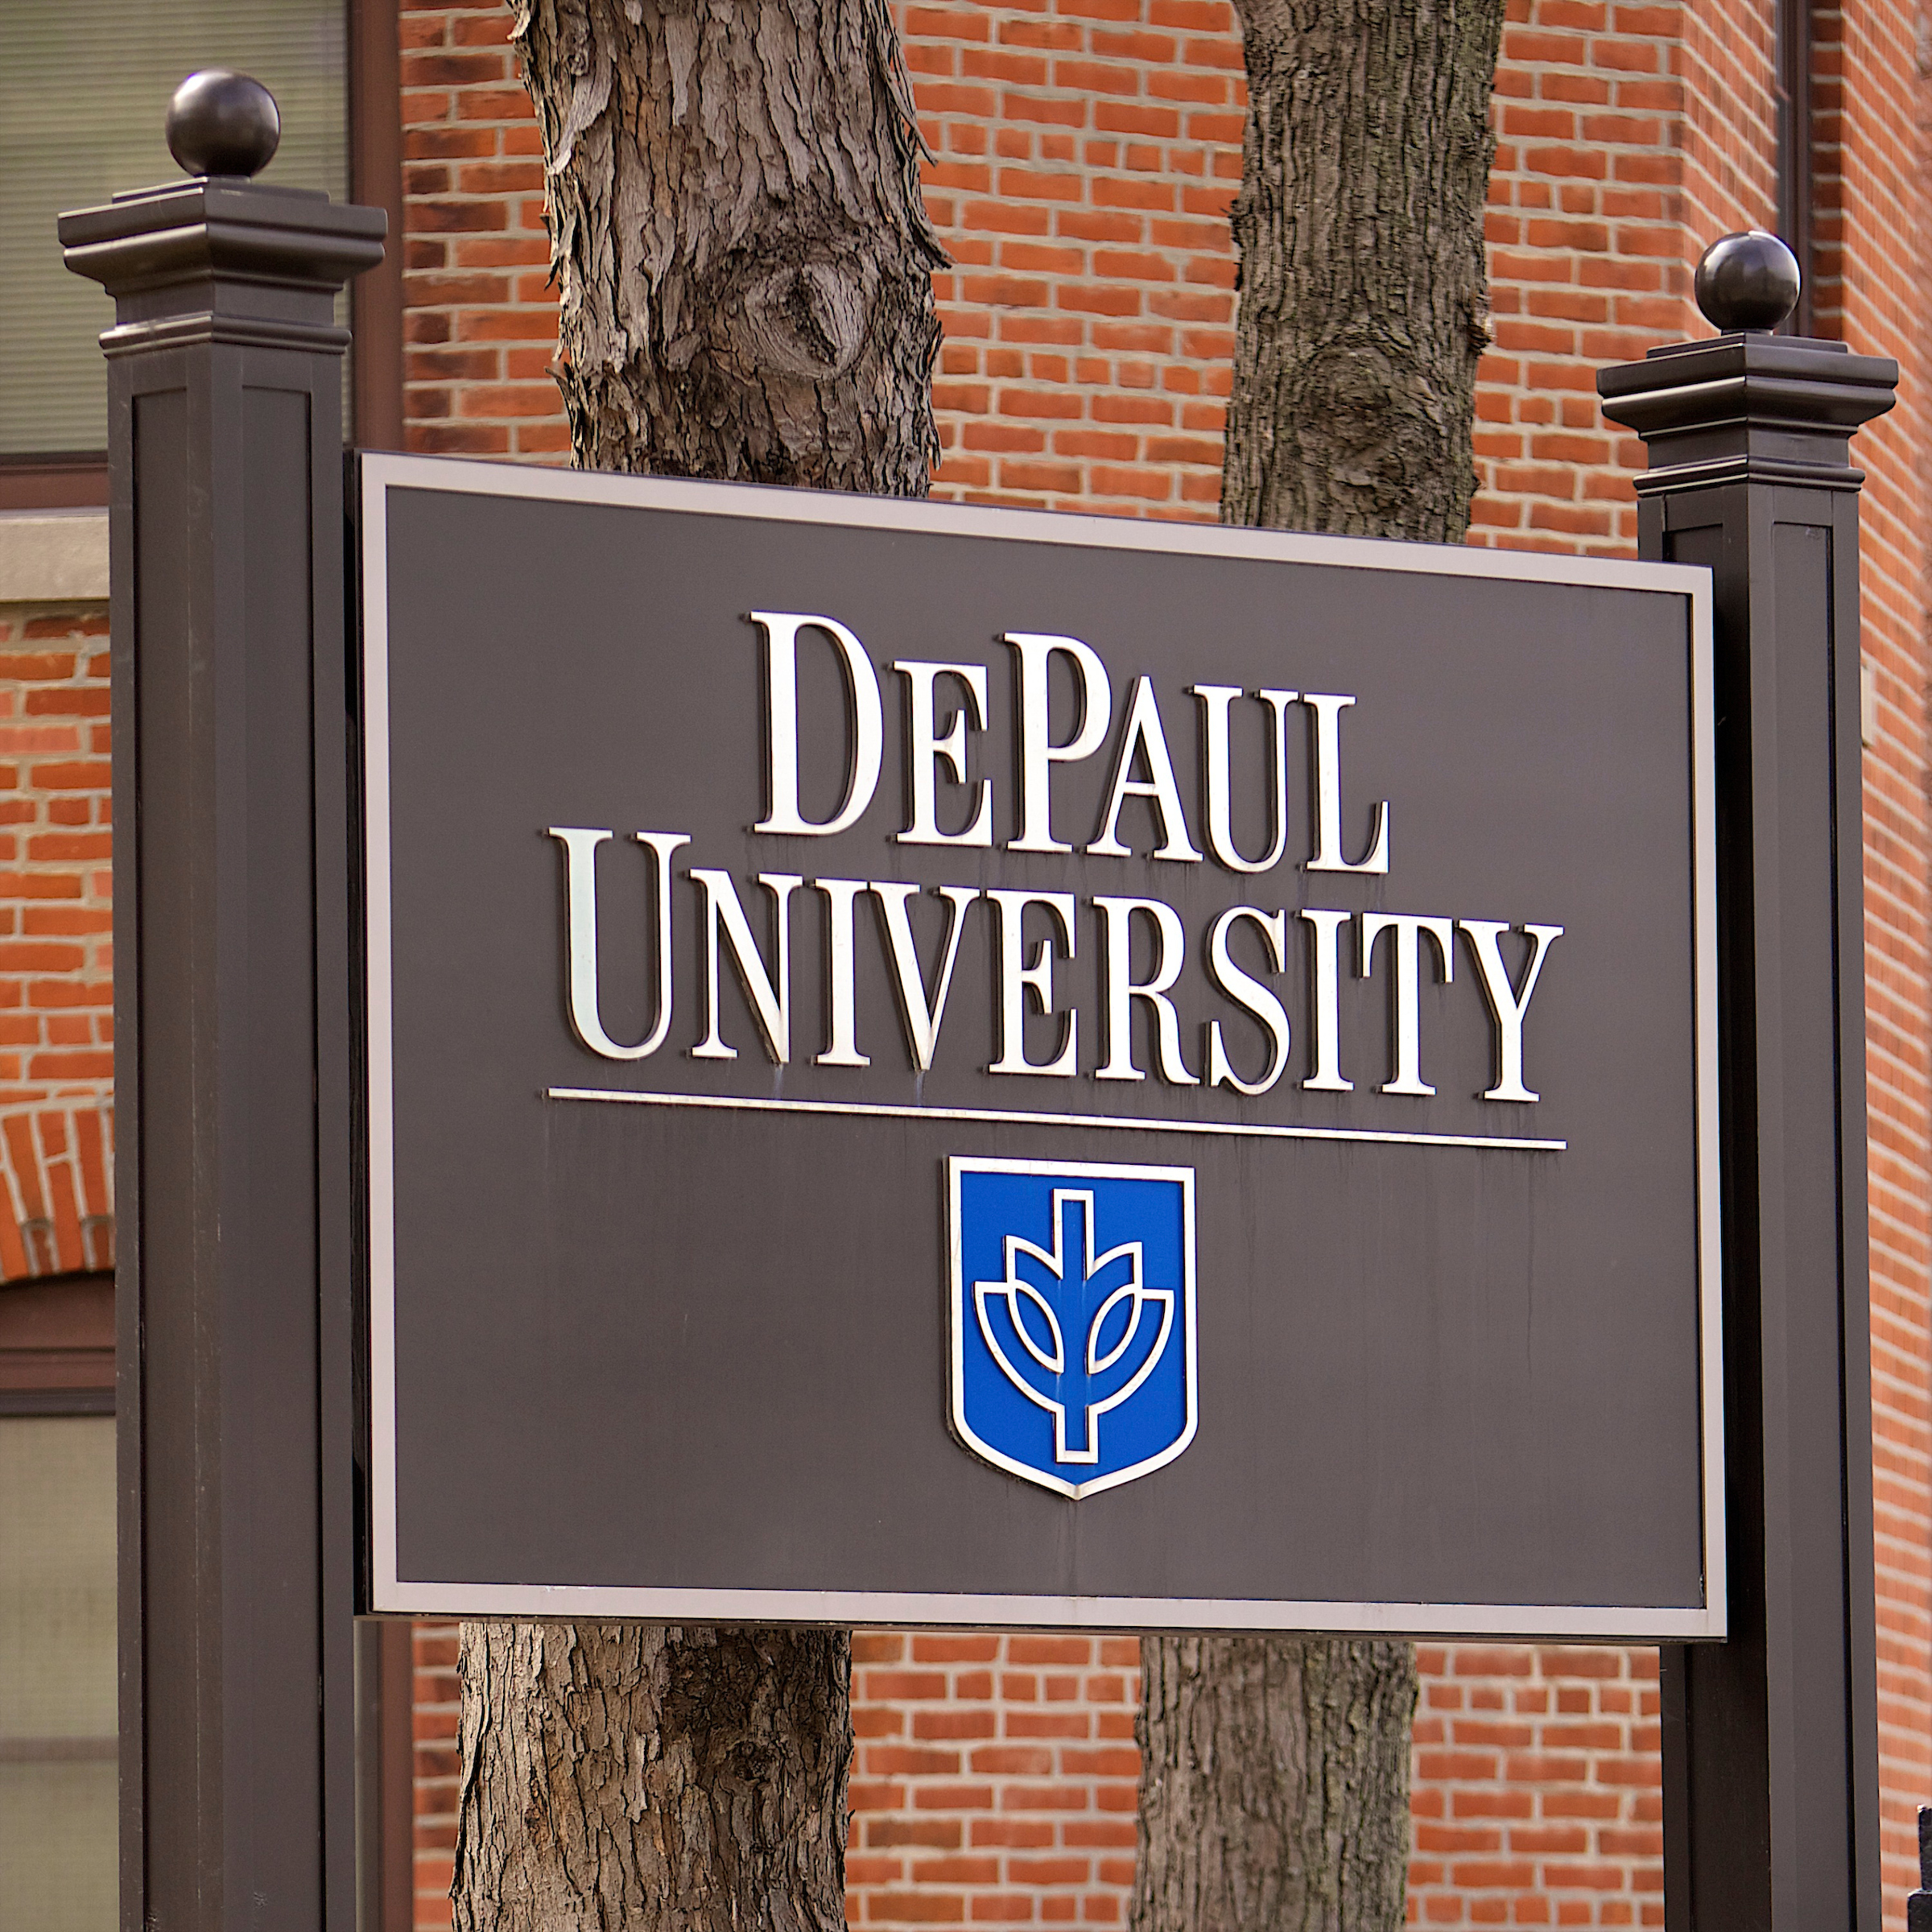 DePaul University signage